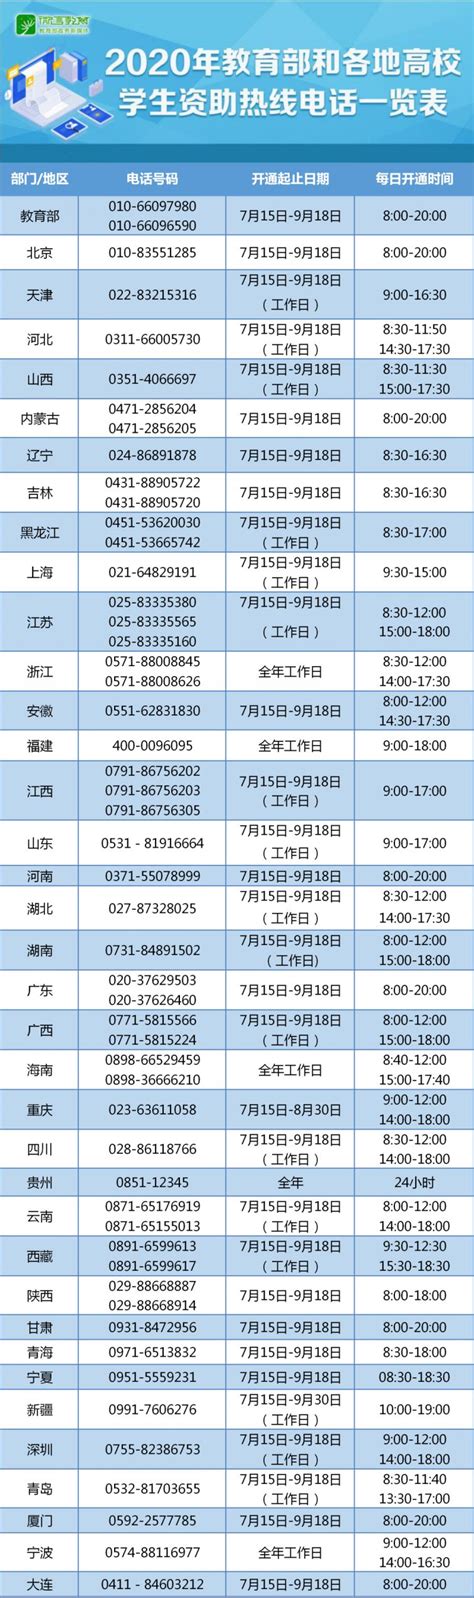 2020年高校学生资助热线电话一览表- 温州本地宝